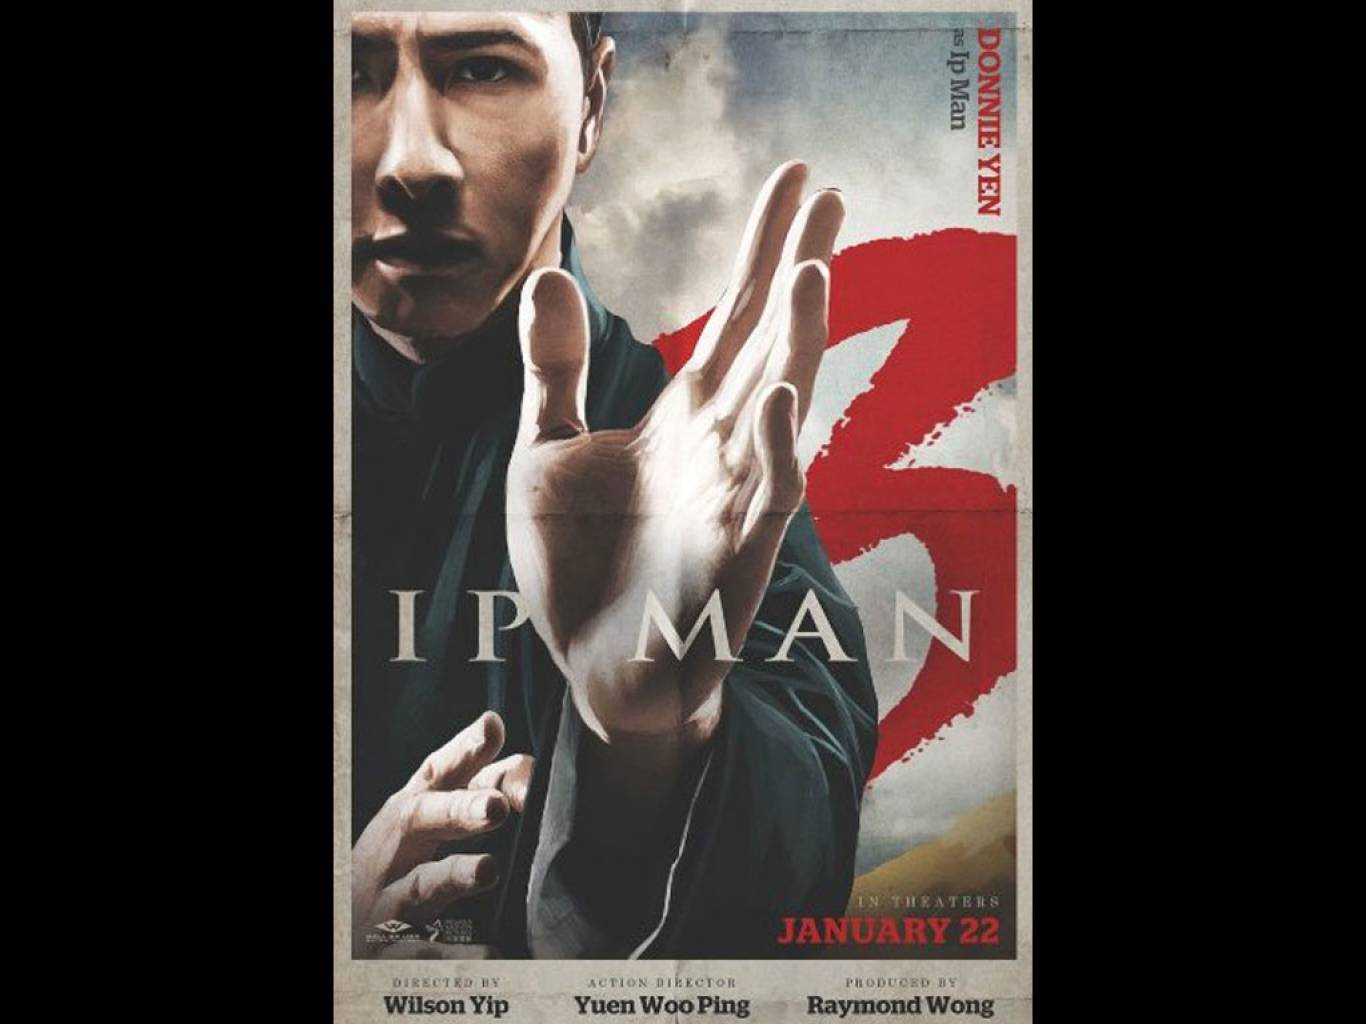 Ip Man 3 Movie HD Wallpaper. Ip Man 3 HD Movie Wallpaper Free Download (1080p to 2K)